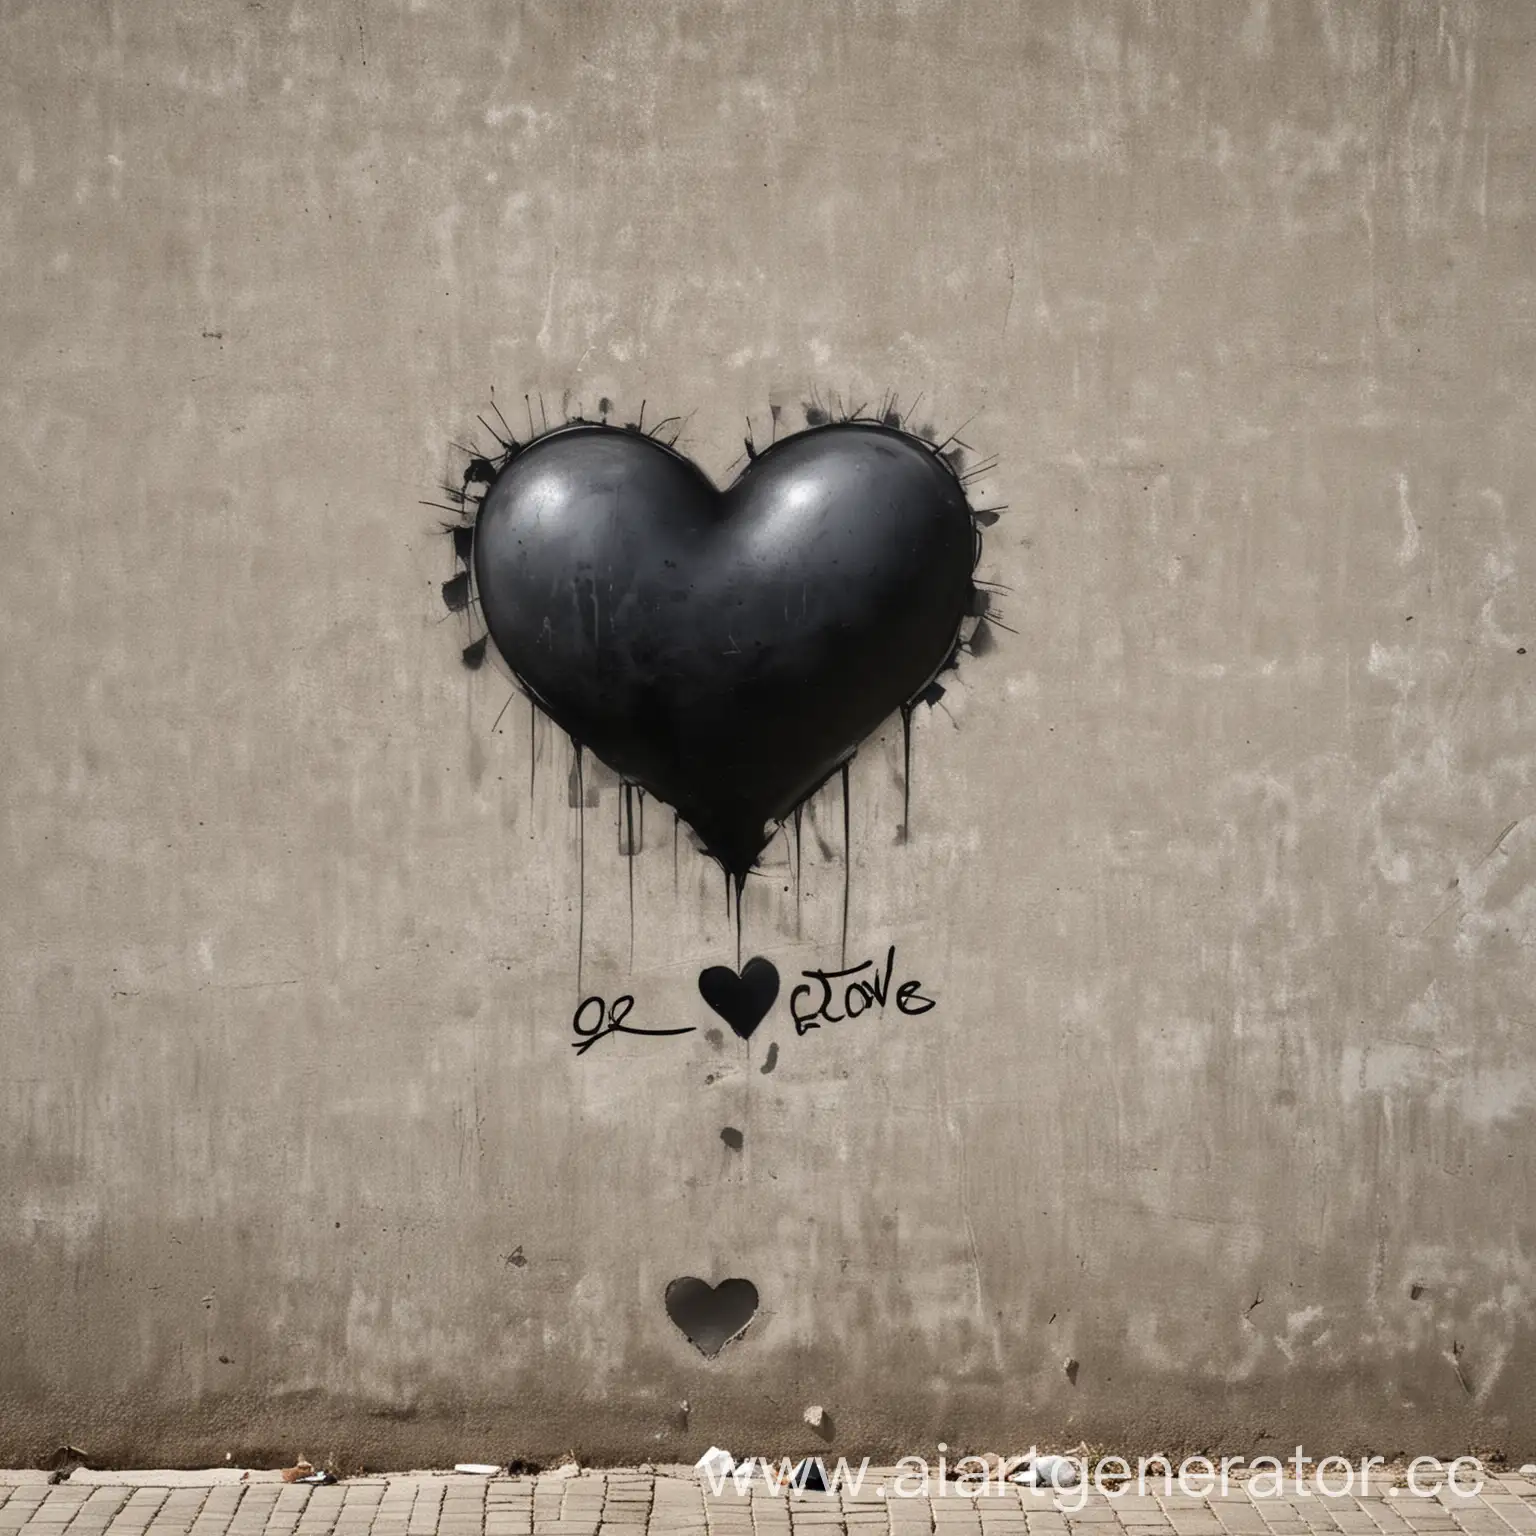 Граффити на стене с надписью "9ROSELOVE" и маленьким минималистичным черным сердцем 